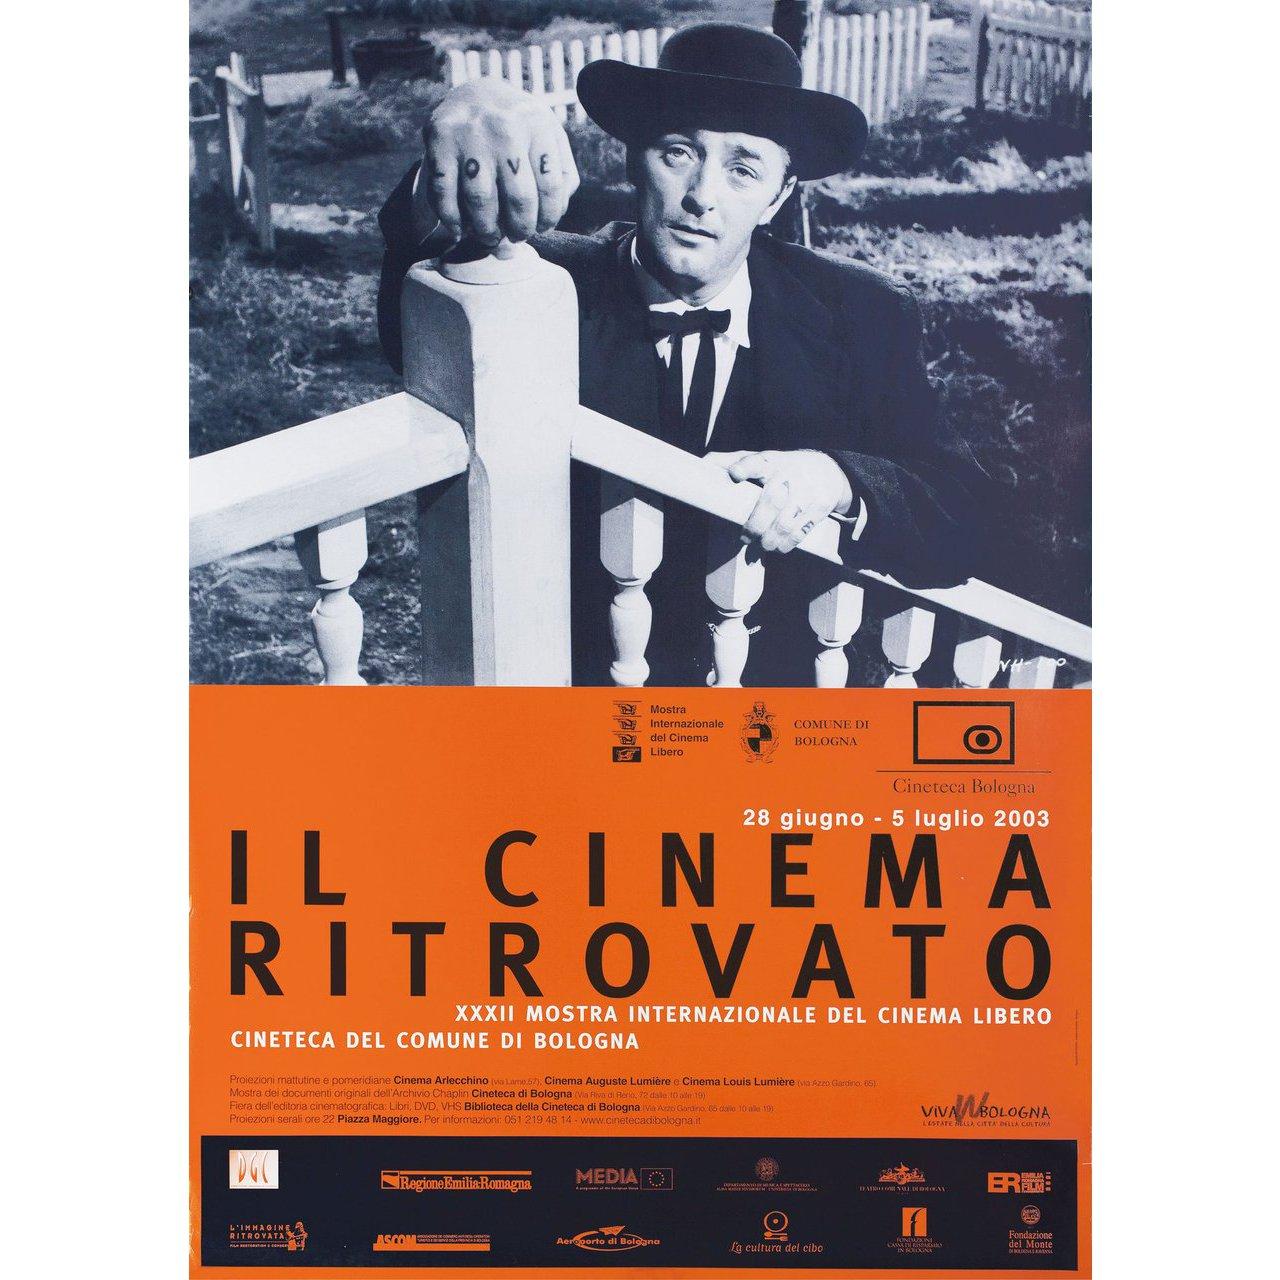 Il Cinema Ritrovato 2003 Italian Foglio Poster In Good Condition For Sale In New York, NY